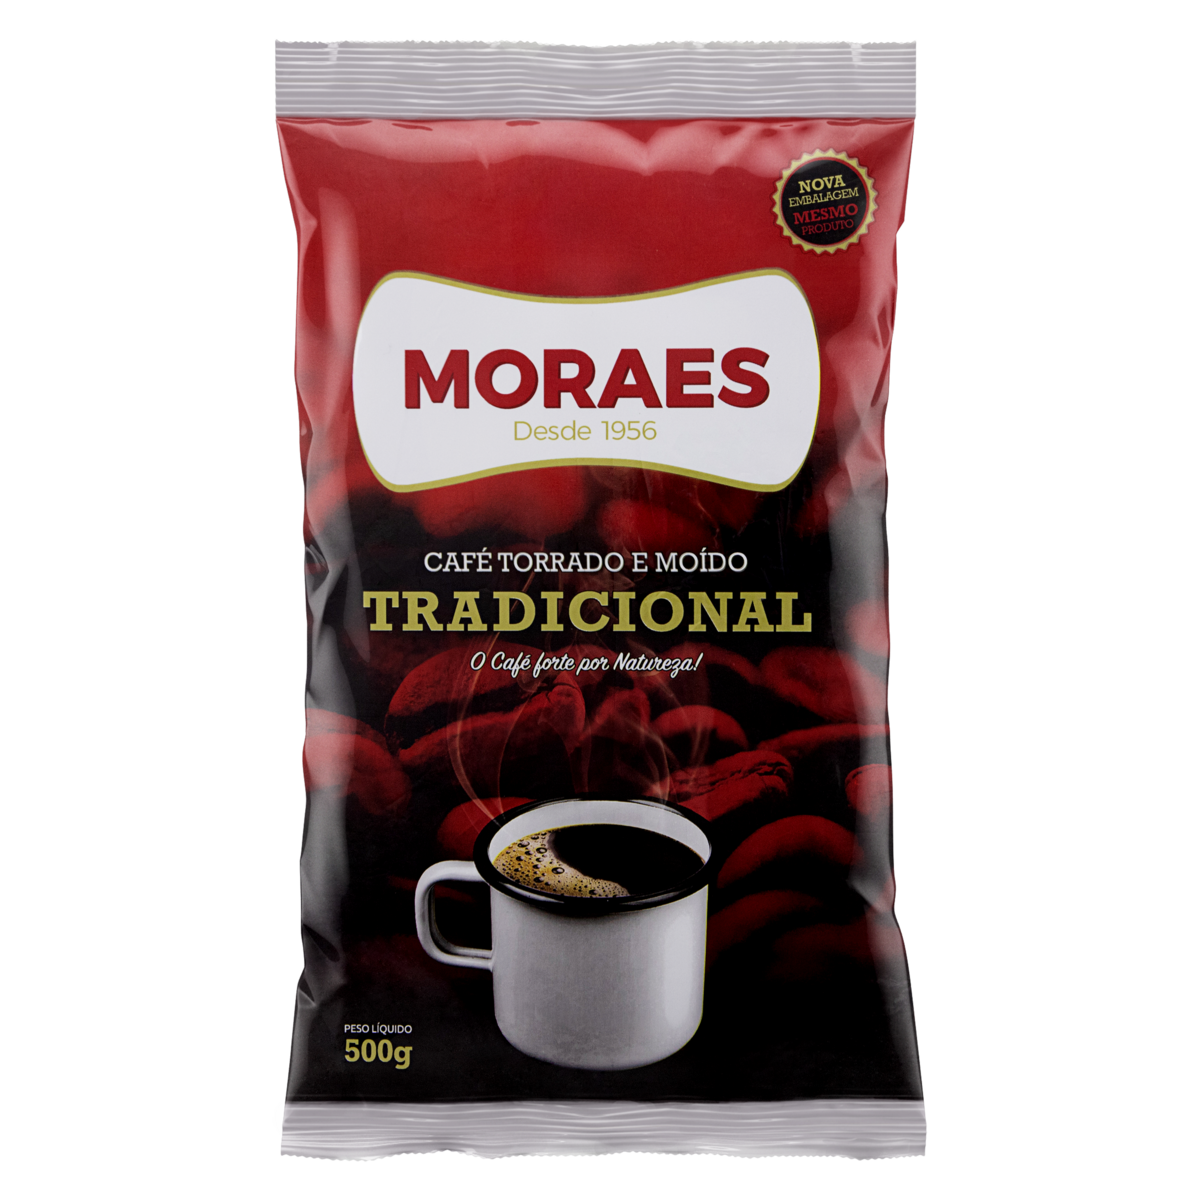 7896235100027 - CAFÉ TORRADO E MOÍDO TRADICIONAL MORAES PACOTE 500G